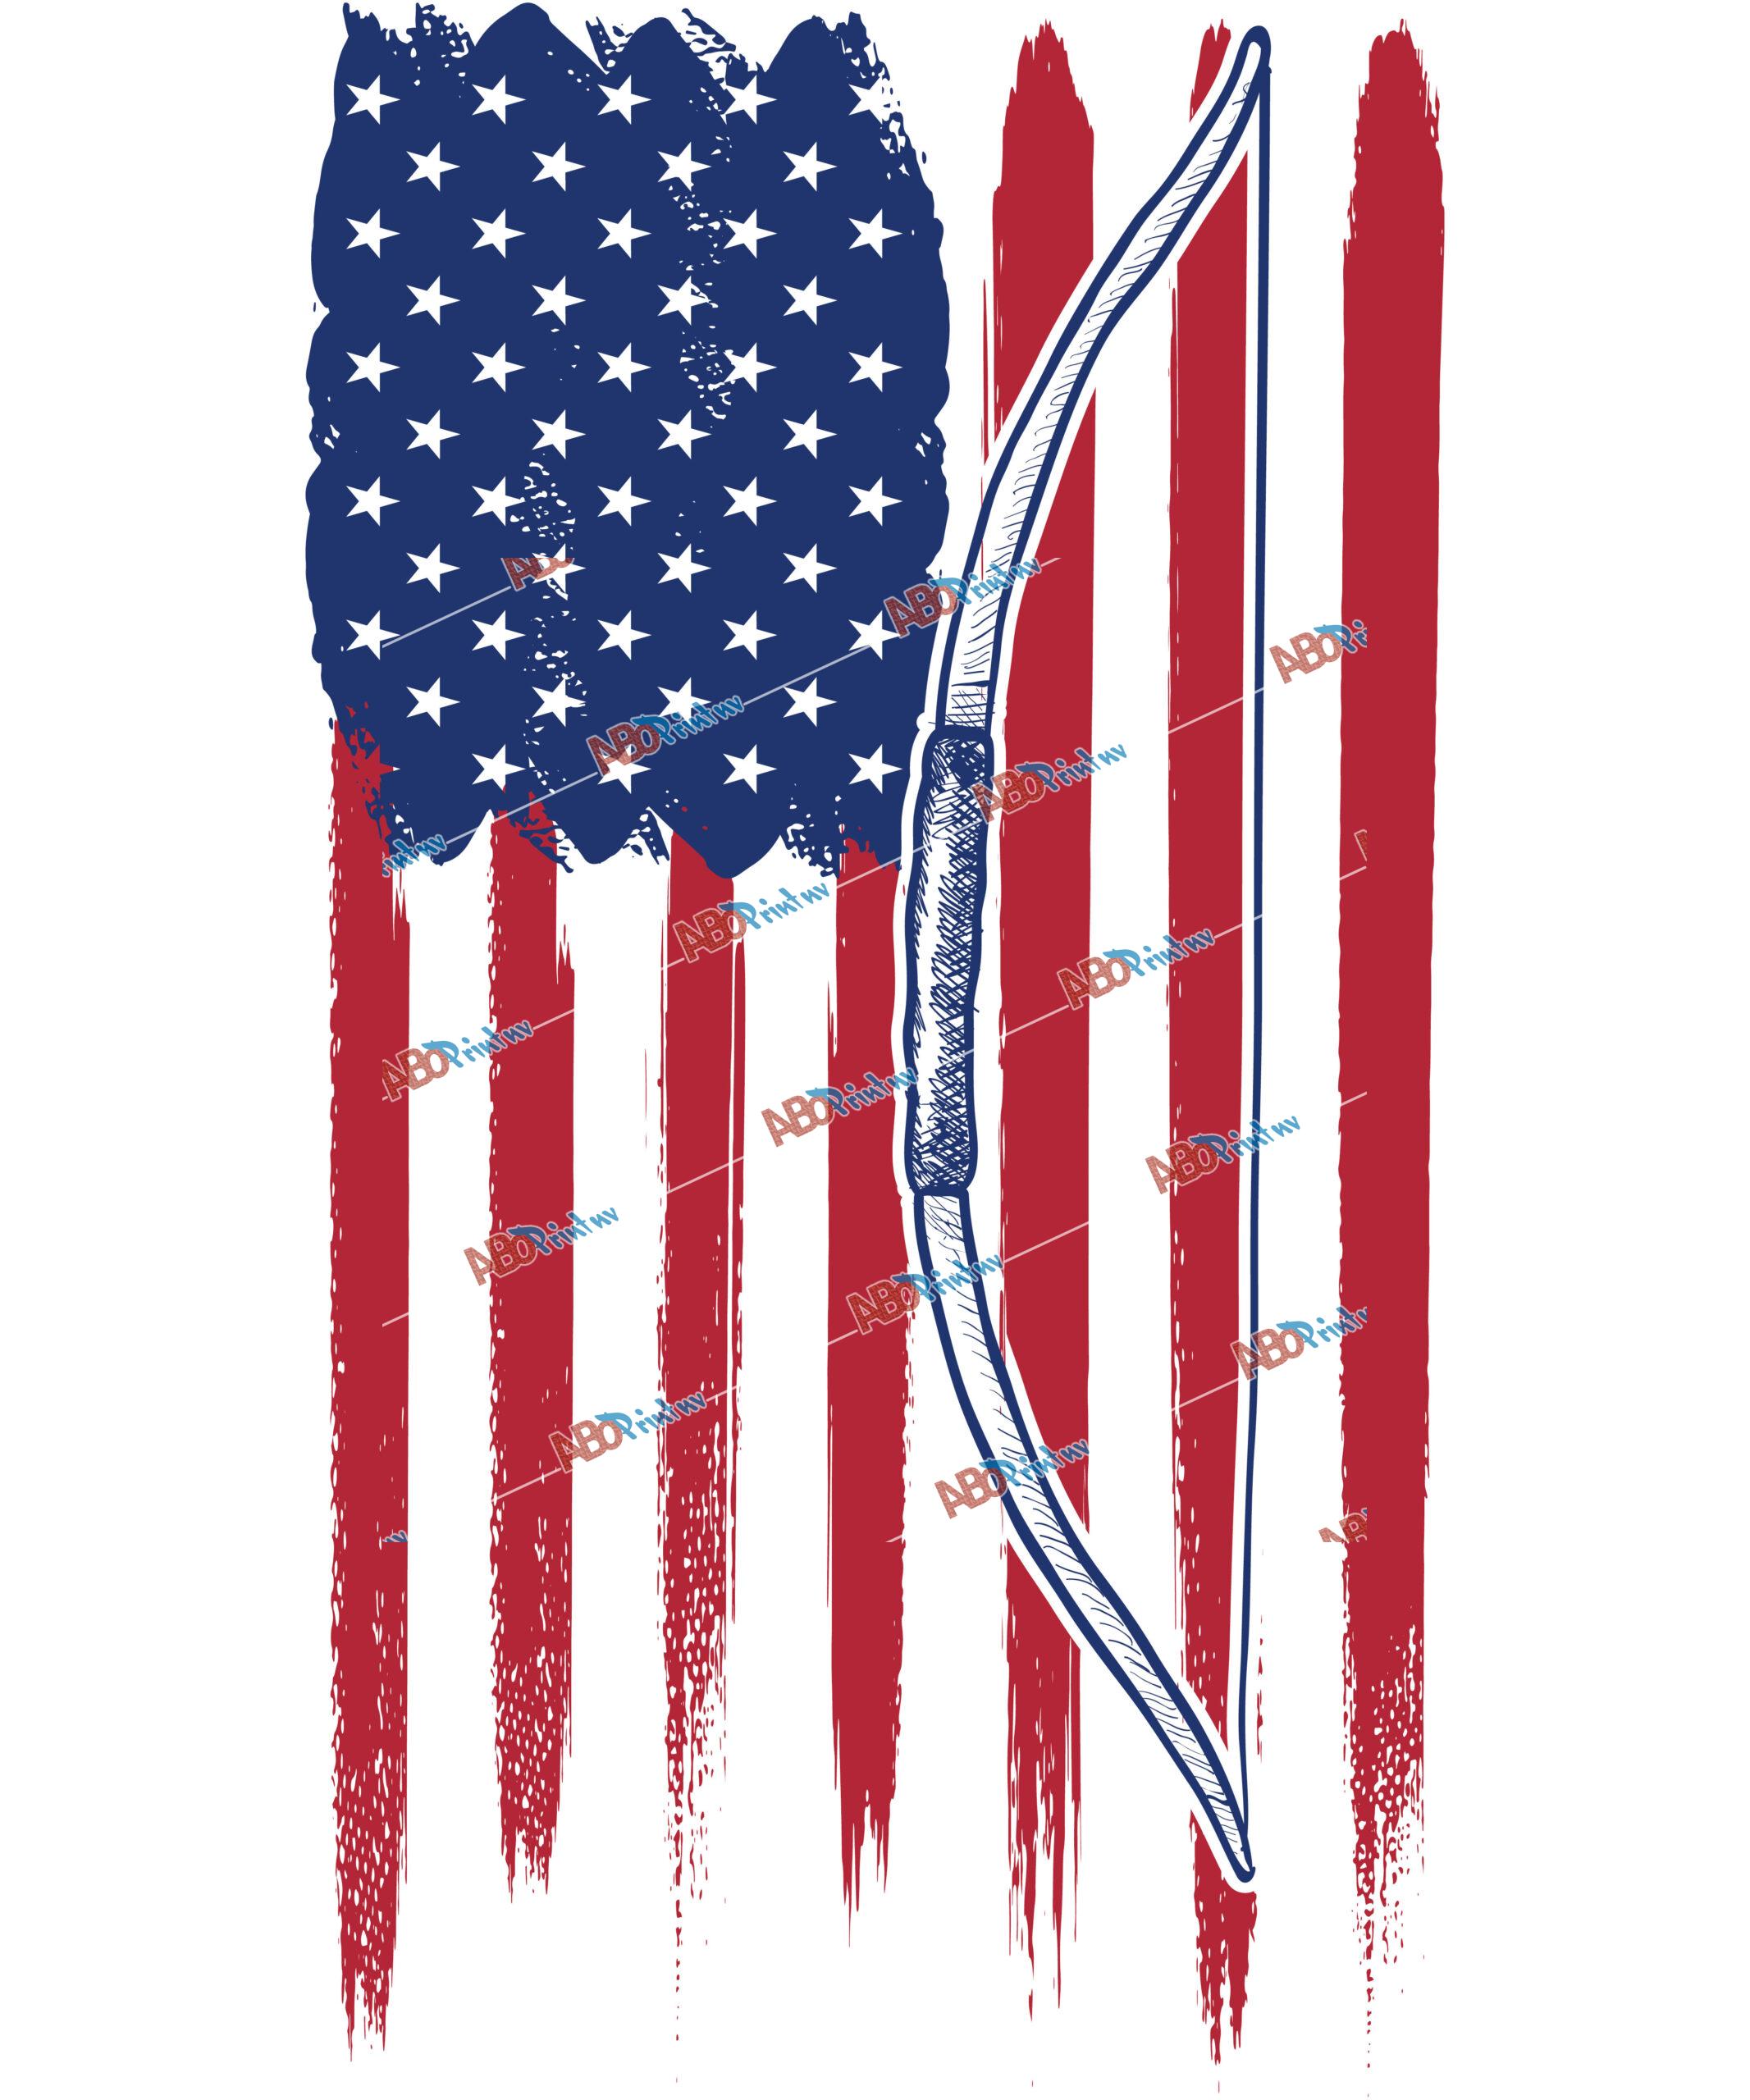 USA Flag with Bow.jpg